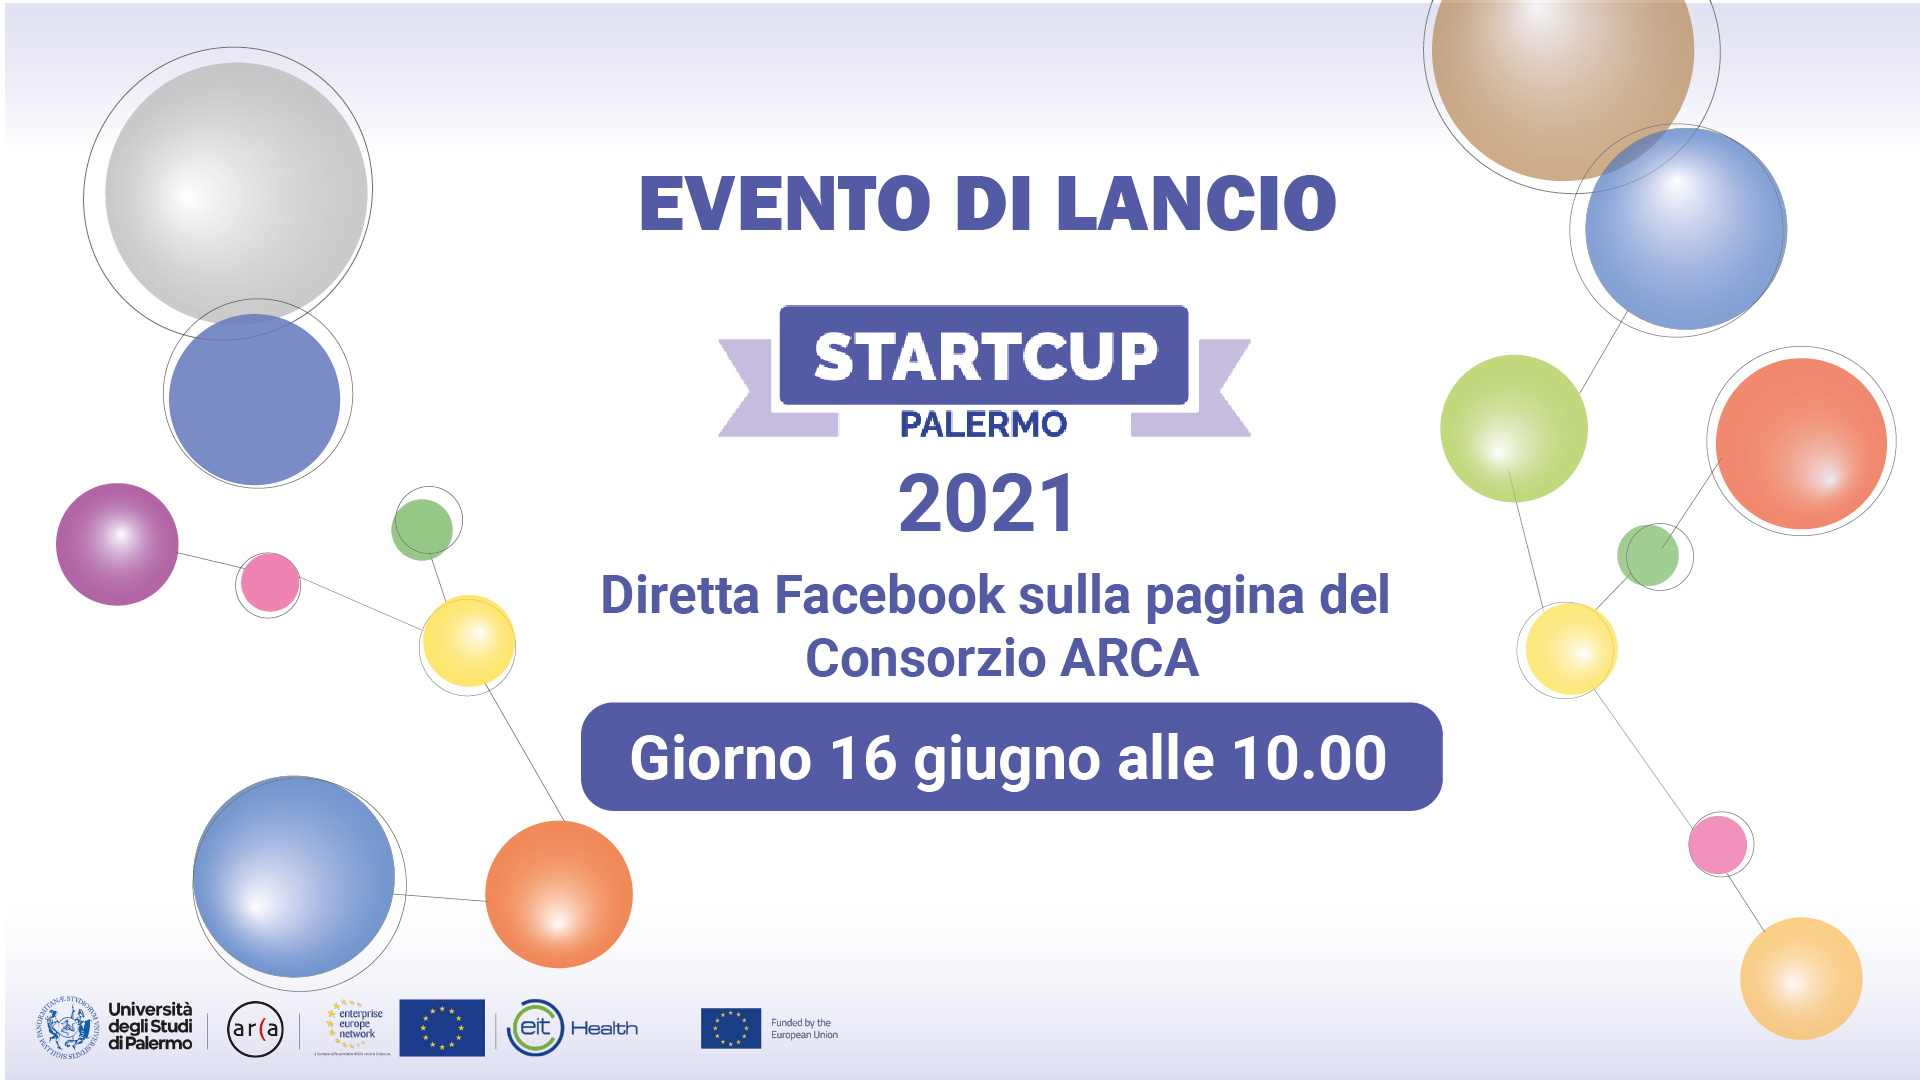 StartCup Palermo